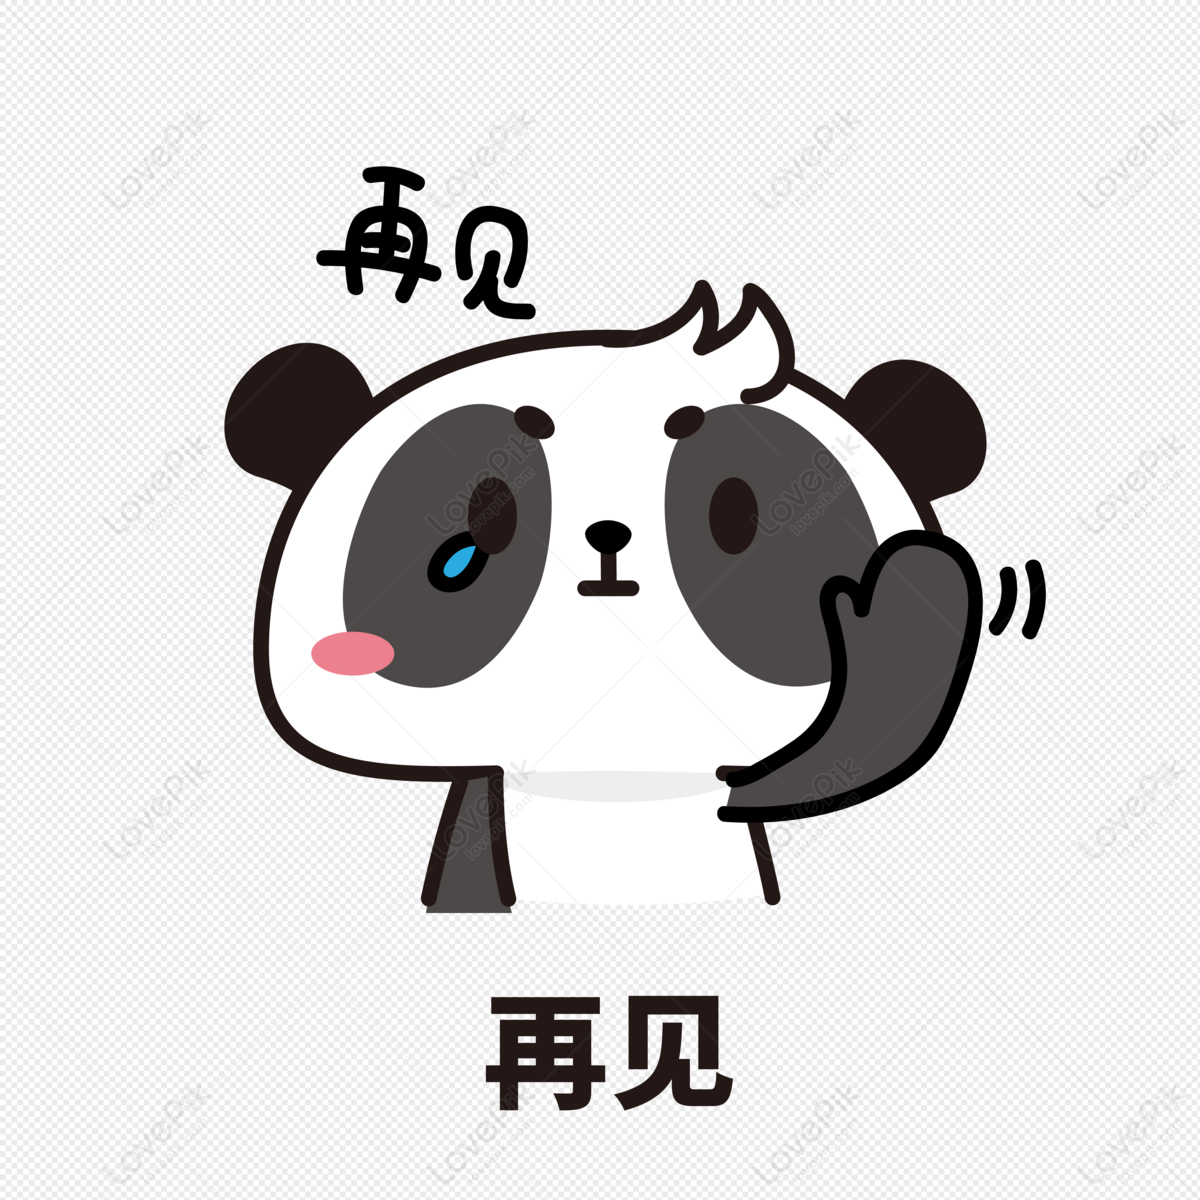 Hình ảnh Panda Biểu Tượng Cảm Xúc Tạm Biệt PNG Miễn Phí Tải Về ...